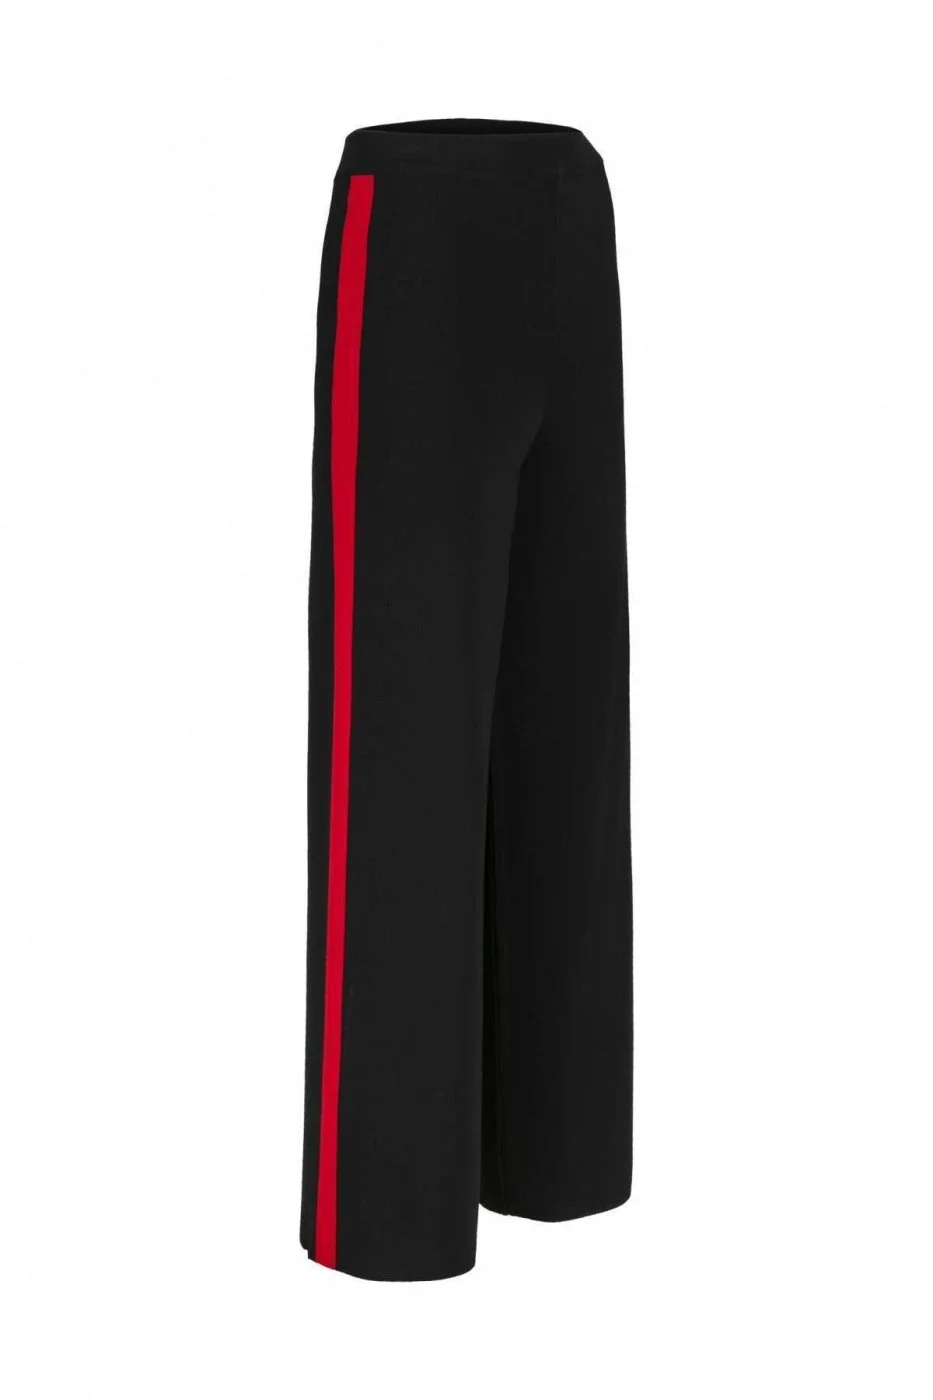  Şeritli Kadın Triko Pantolon Siyah - 4